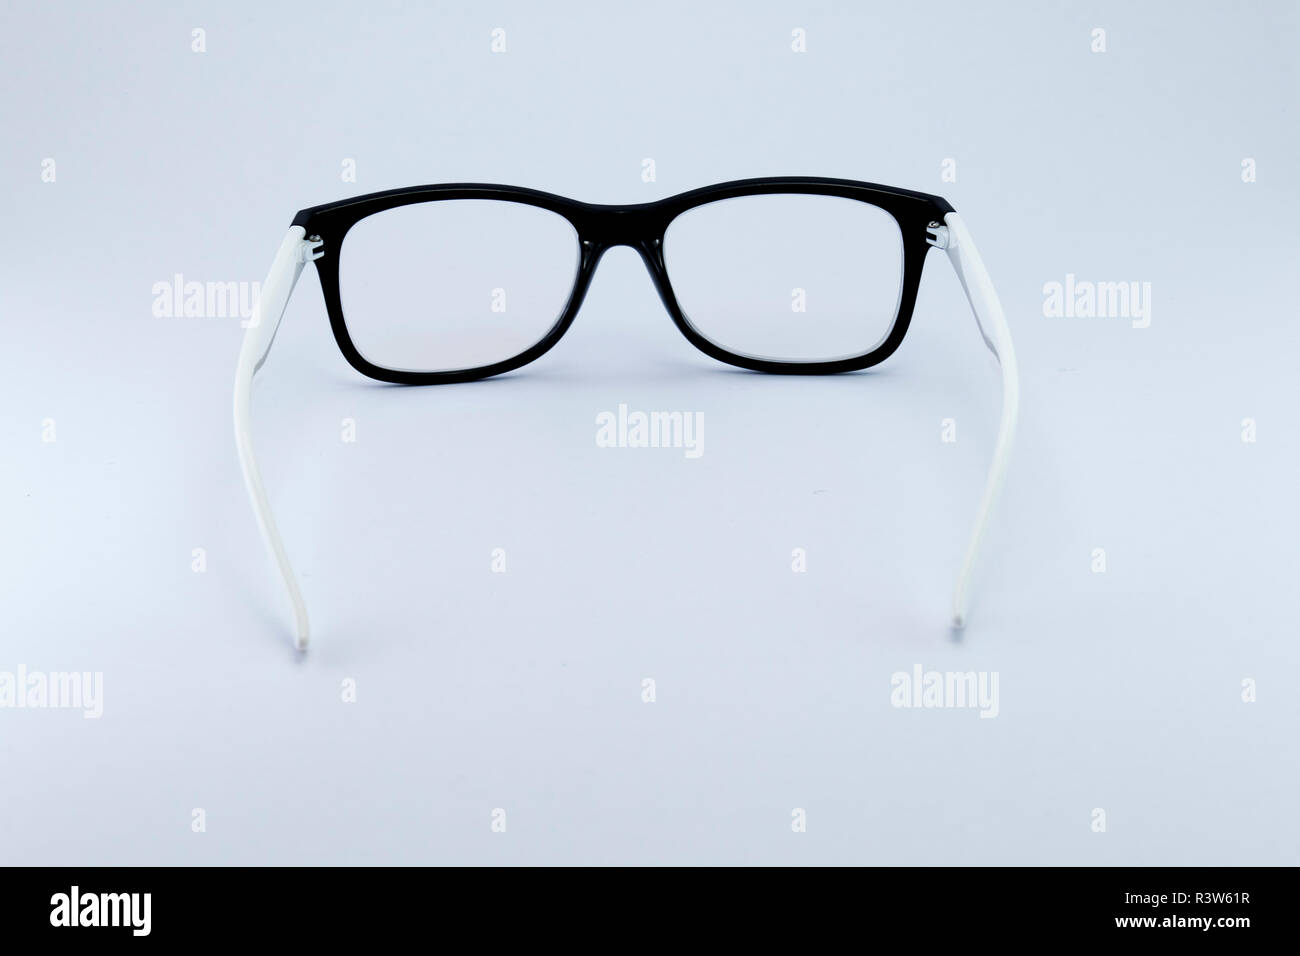 Black glasses to improve eyesight isolated on white background Stock ...